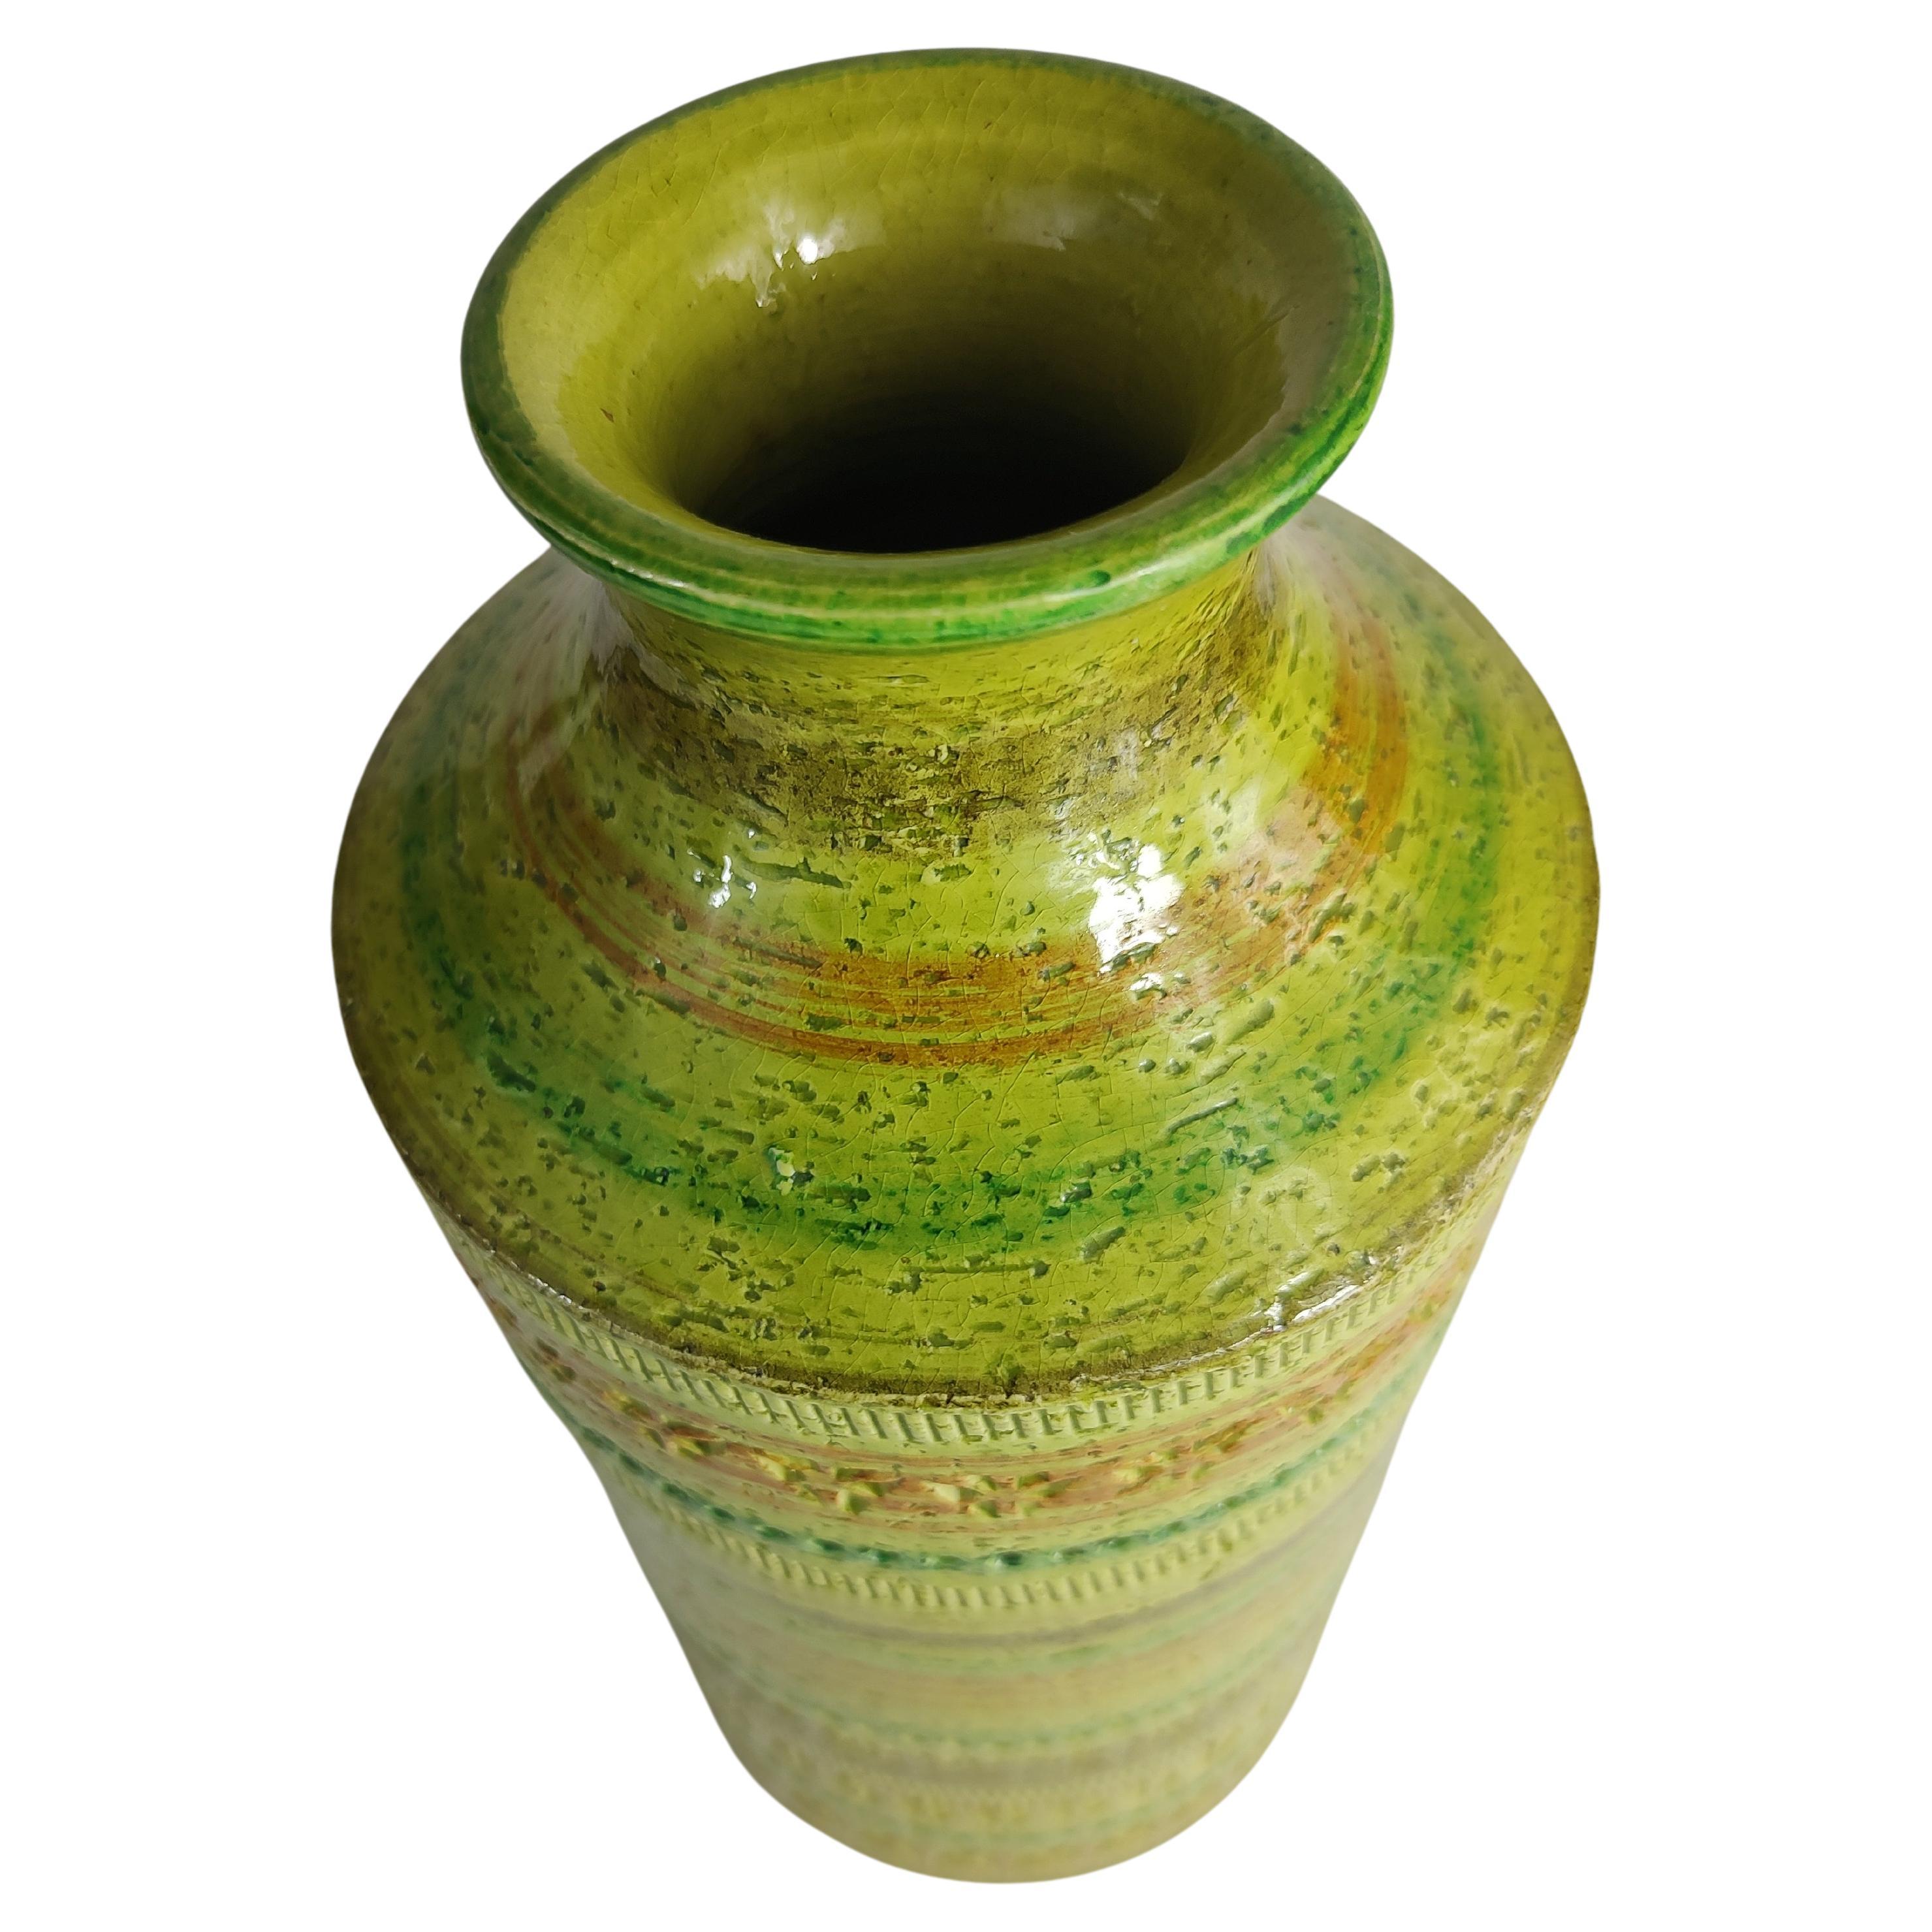 Fabuleux et magnifique vase en vert tilleul avec des bandes concentriques de différentes couleurs et des impressions archaïques bordant le périmètre. Vase Aldo Londi pour Bitossi, 12,5 x 5,5 de diamètre. Un travail fantastique, des couleurs